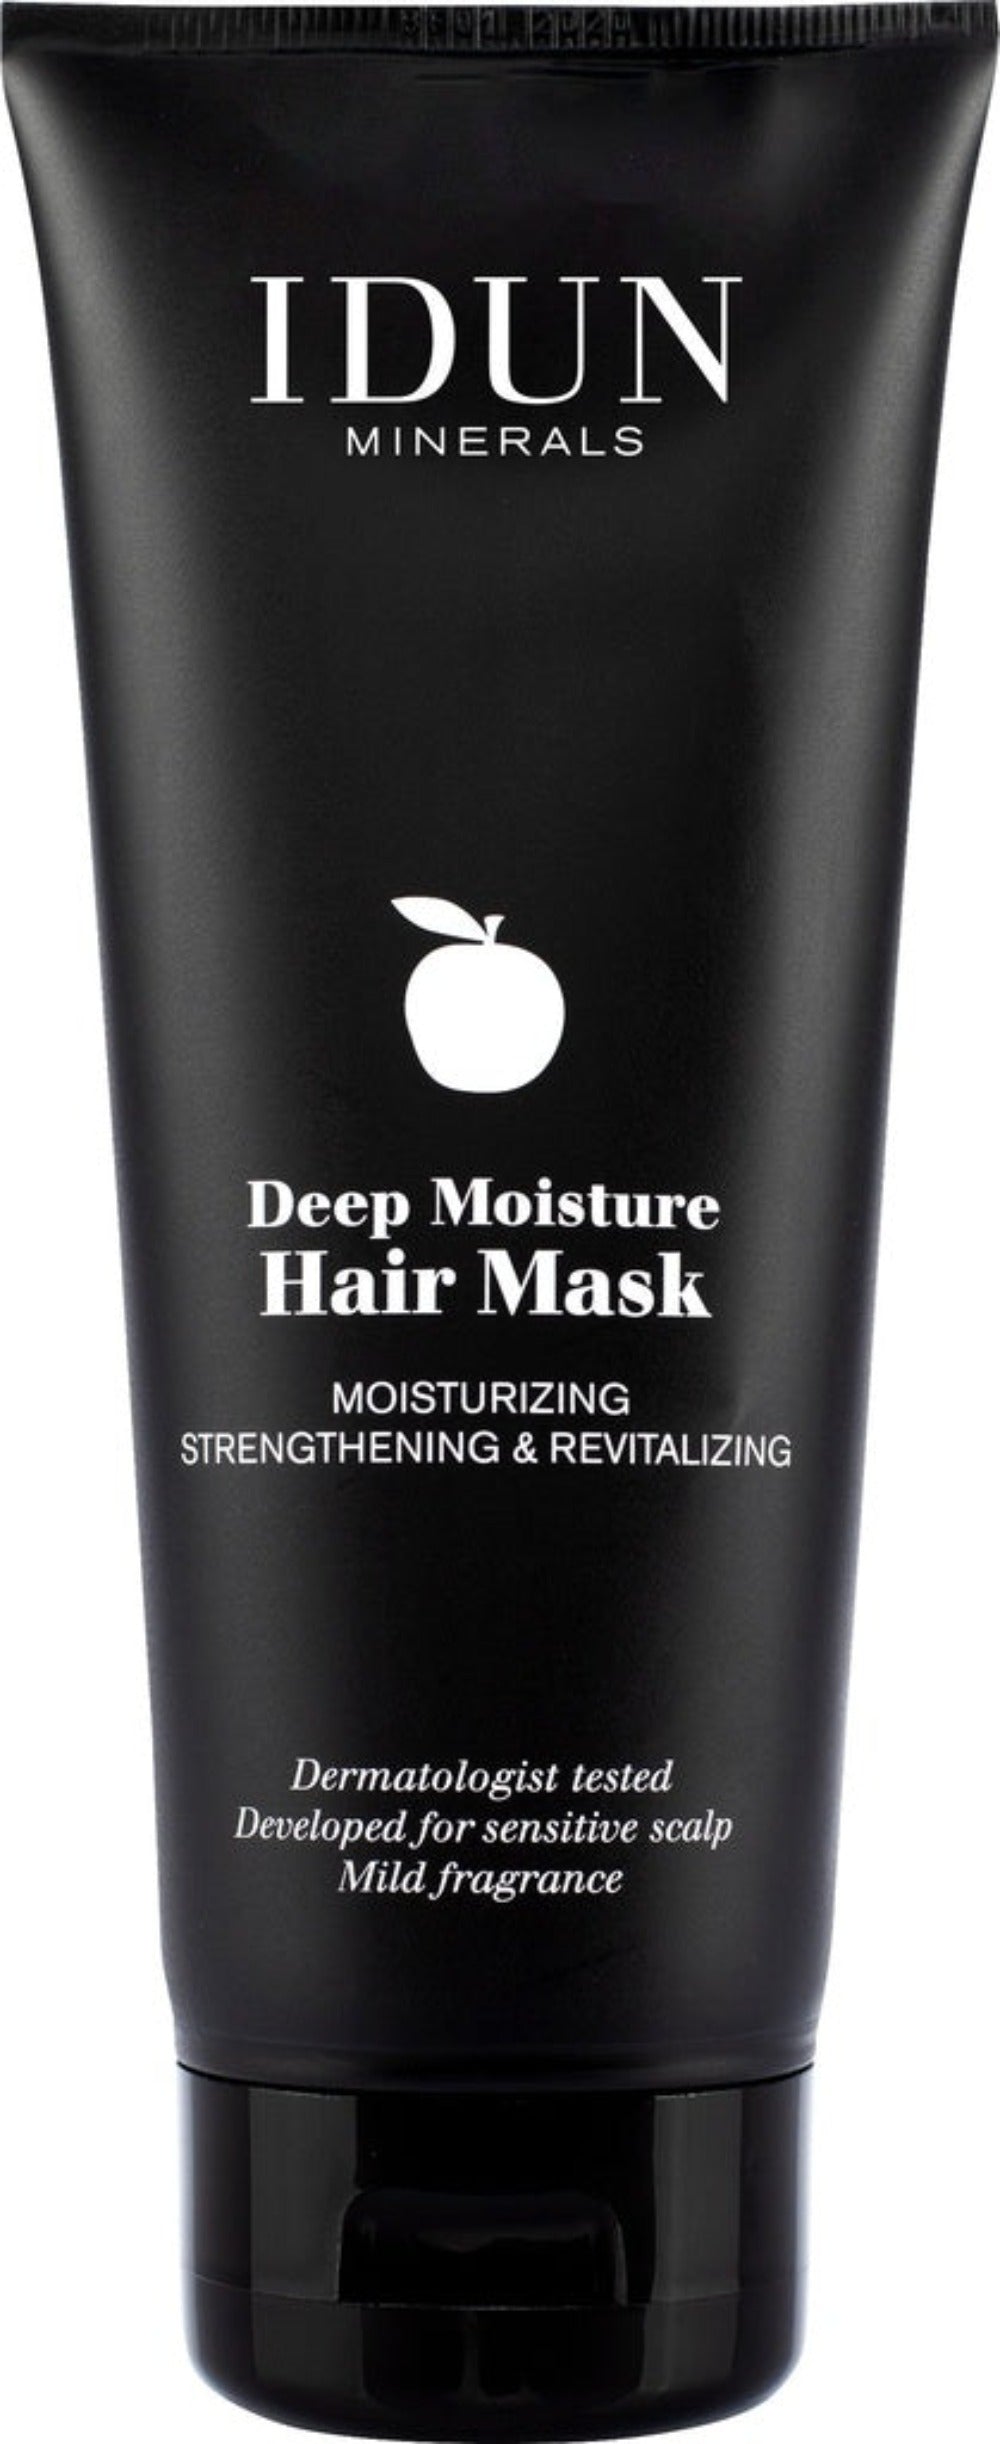 IDUN MINERALS - Deep Moisture Hair Mask - 200ml